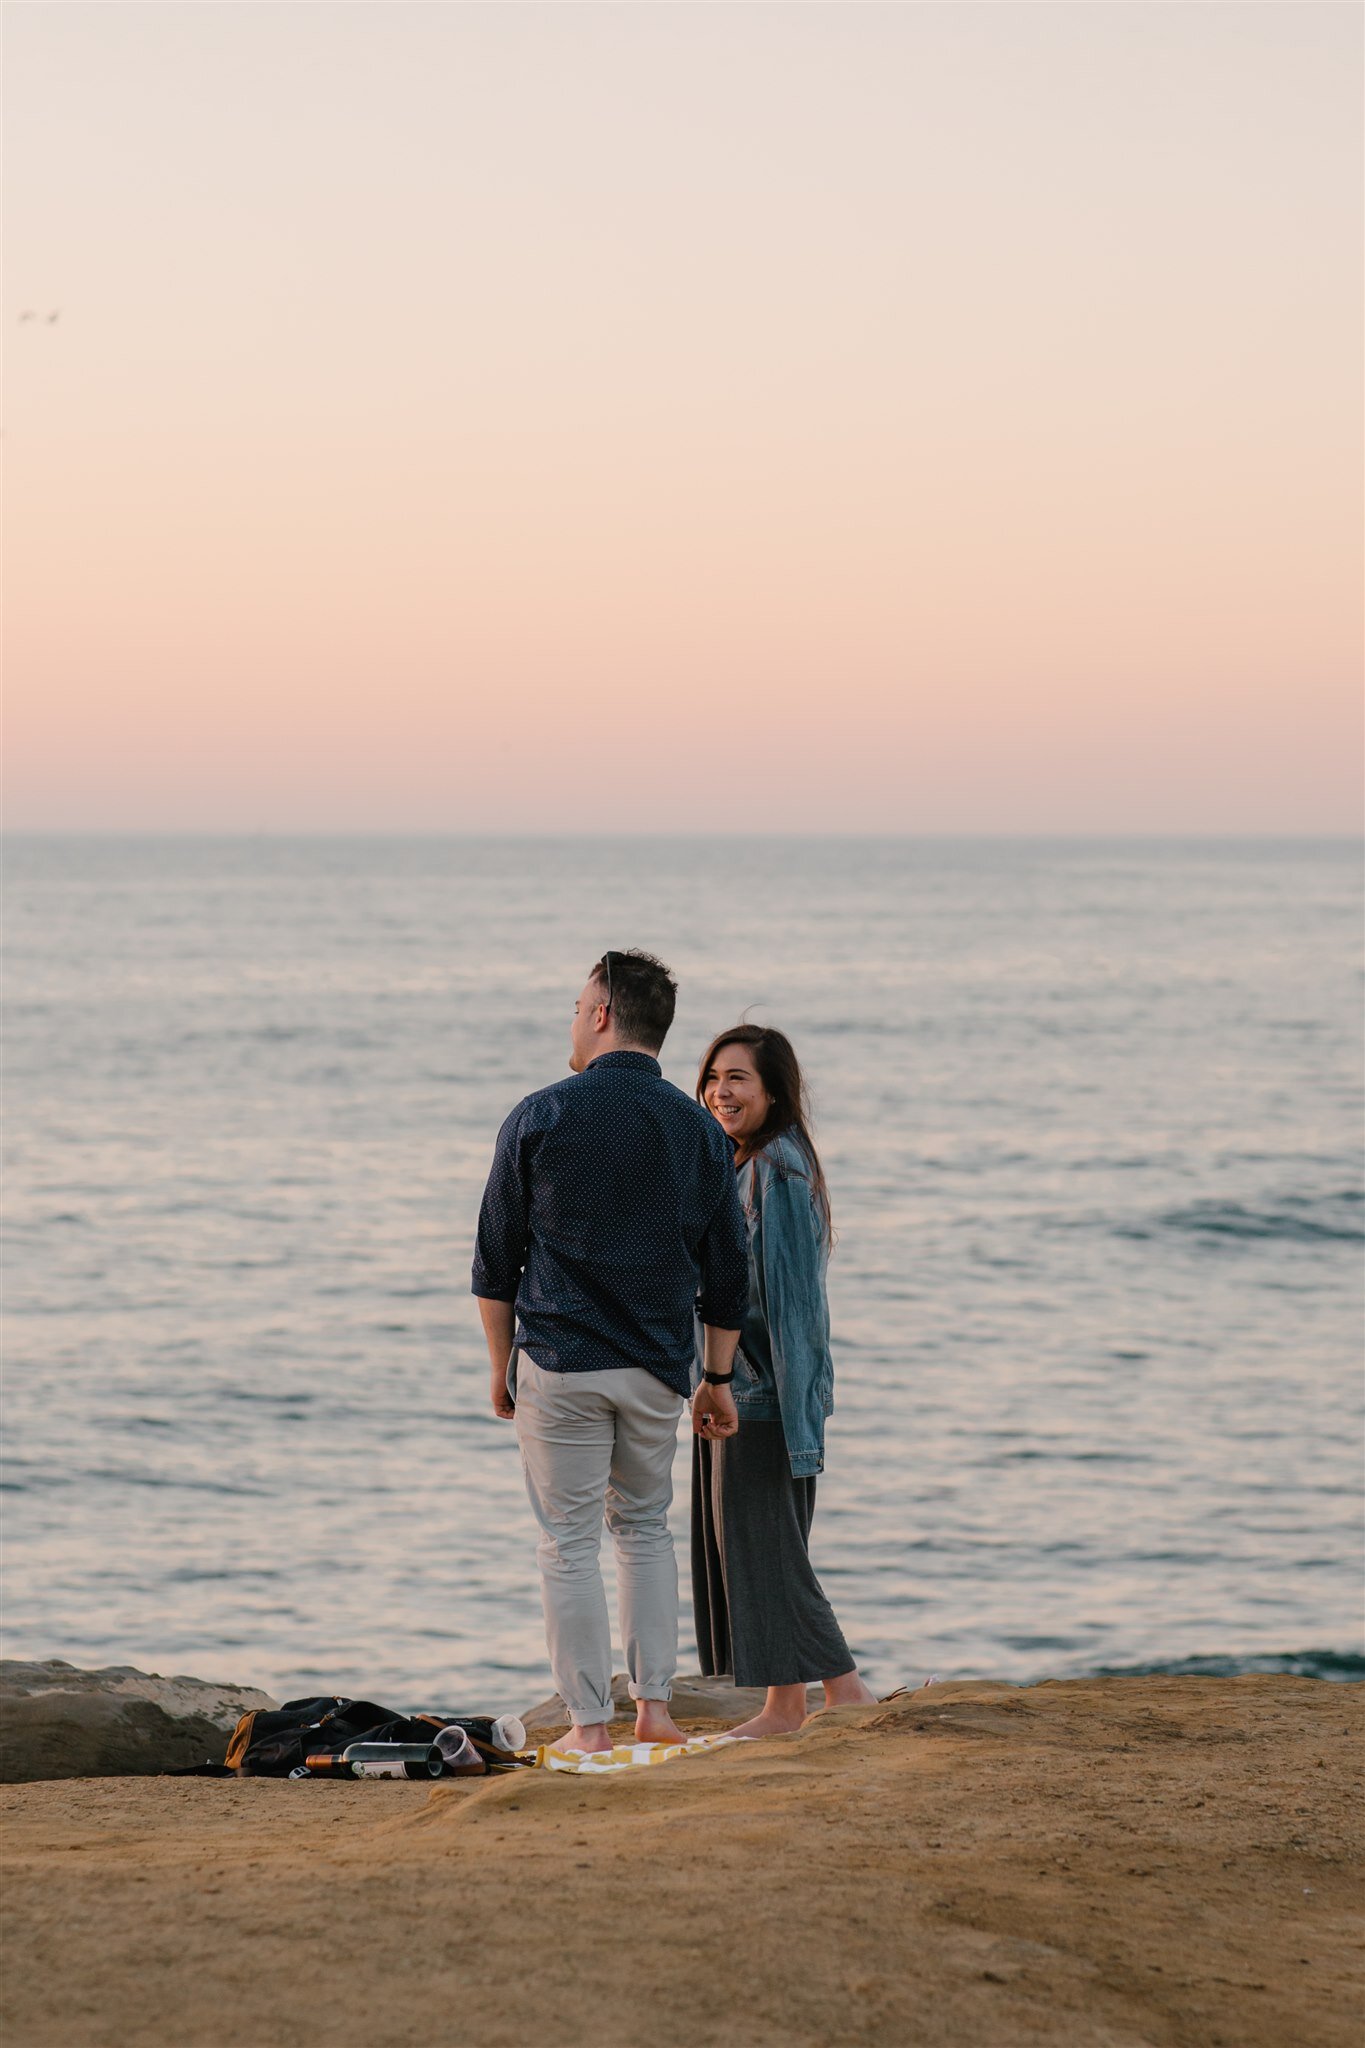 sunset-cliffs-san-diego-surprise-proposal-engagement-socal-southern-california-wedding-elopement-photographer-beach-ocean-8.jpg